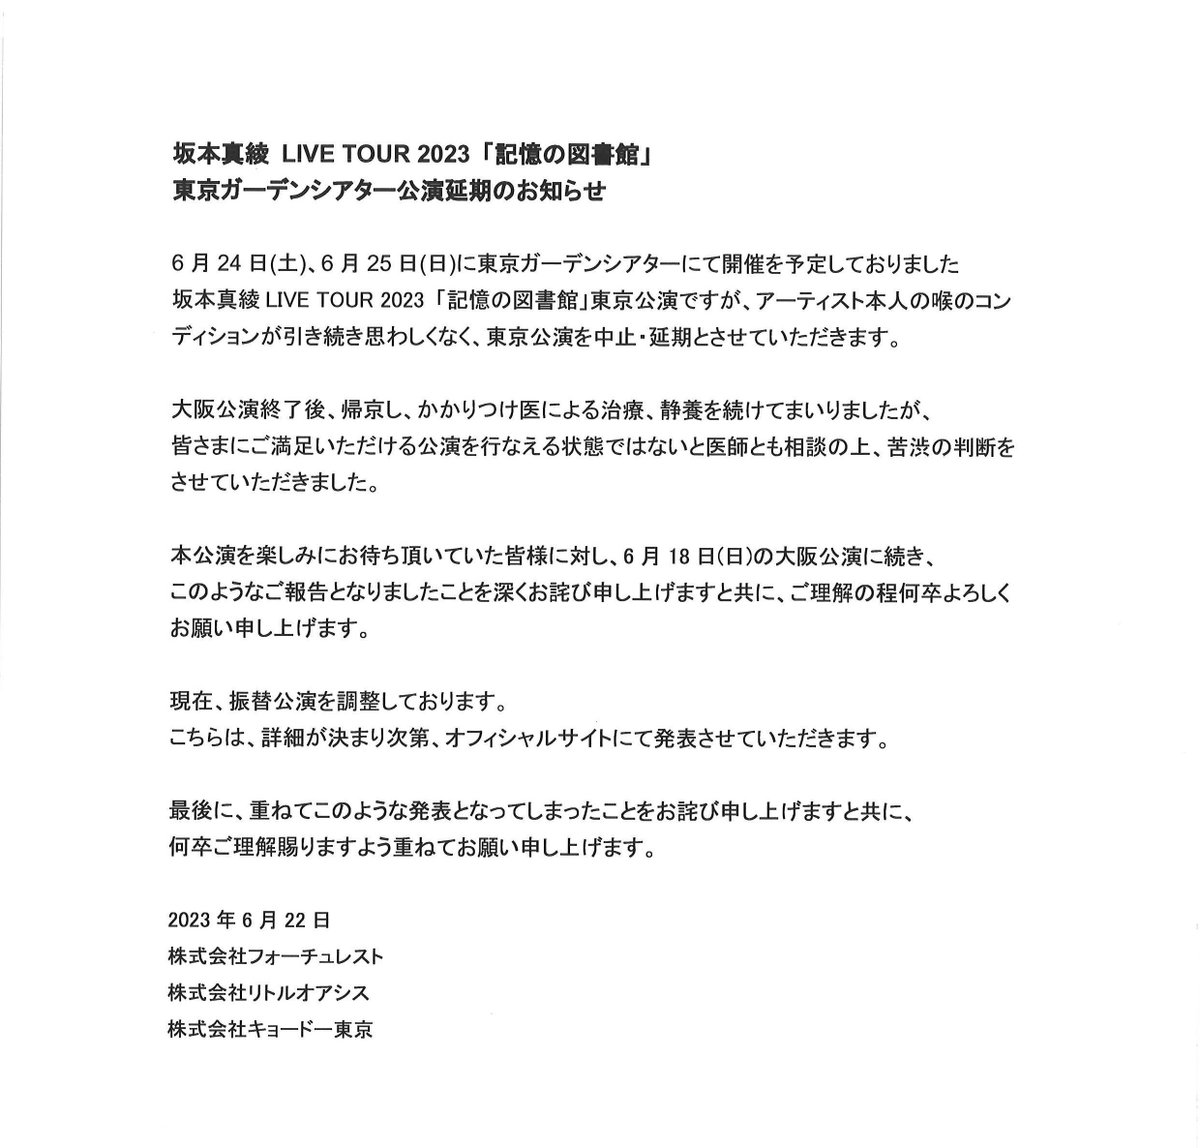 【#坂本真綾】　

坂本真綾 LIVE TOUR 2023 「記憶の図書館」
東京ガーデンシアター公演延期のお知らせ